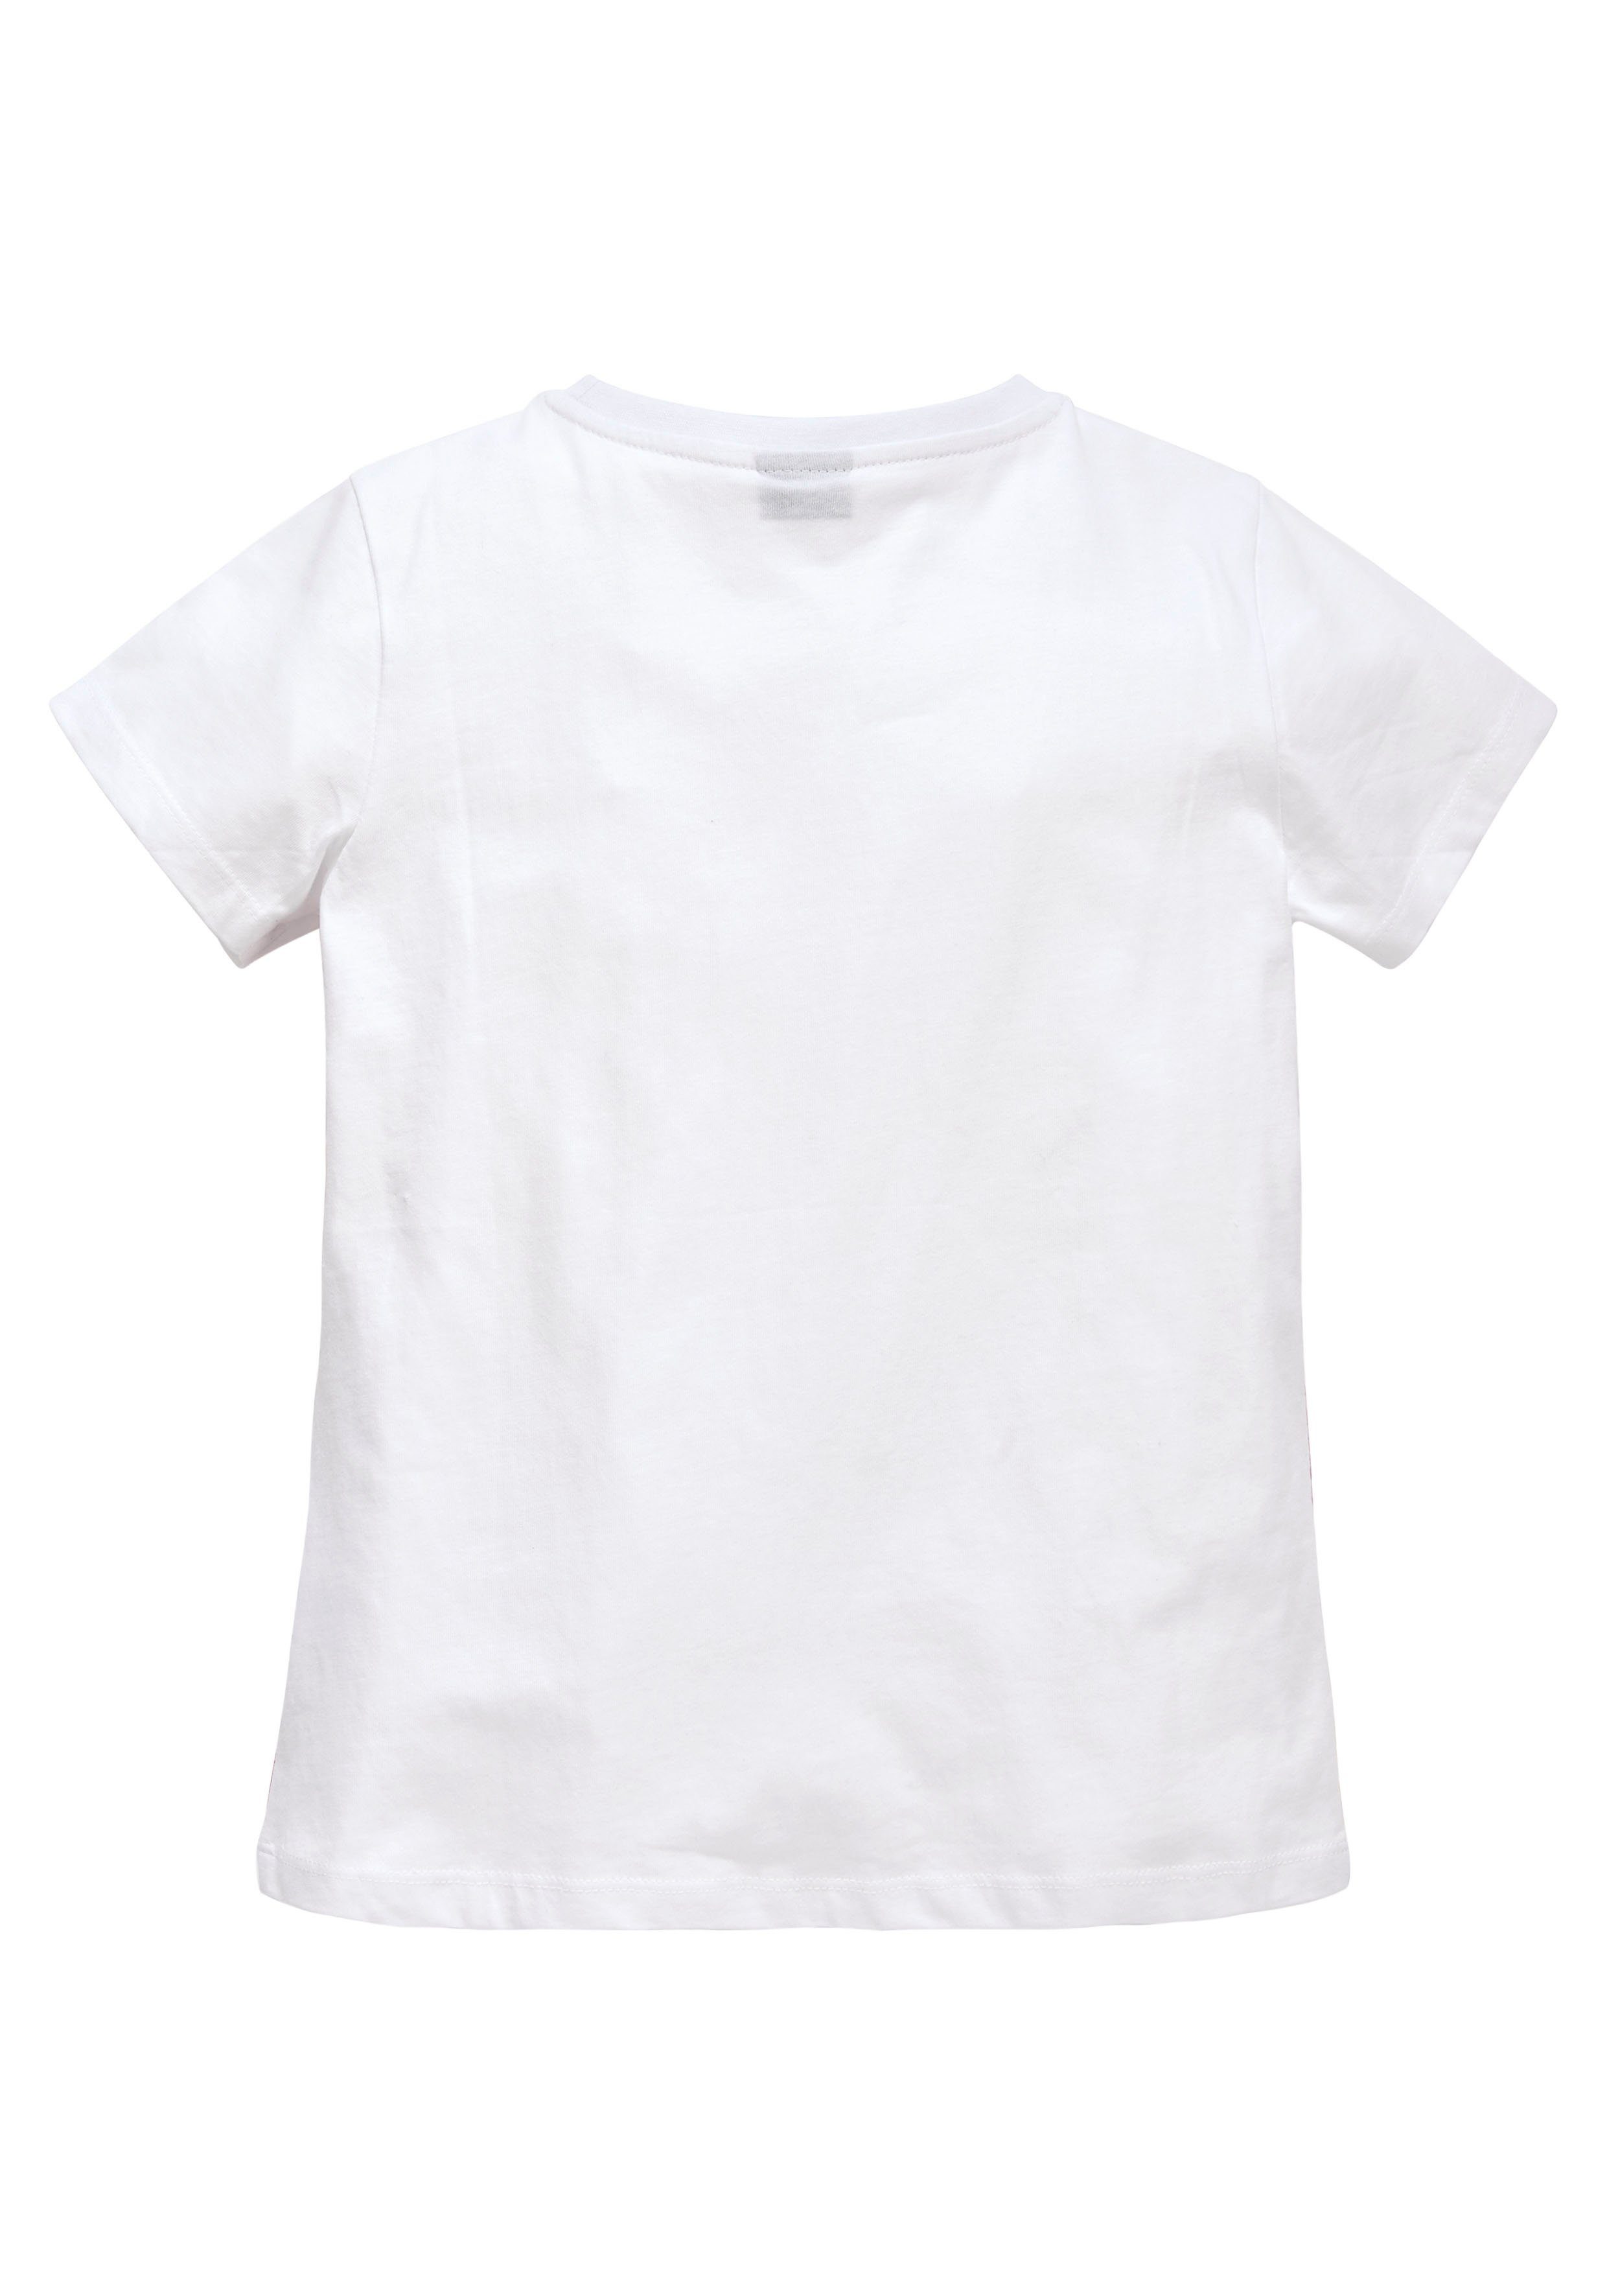 KIDSWORLD T-Shirt in taillierter leicht Form